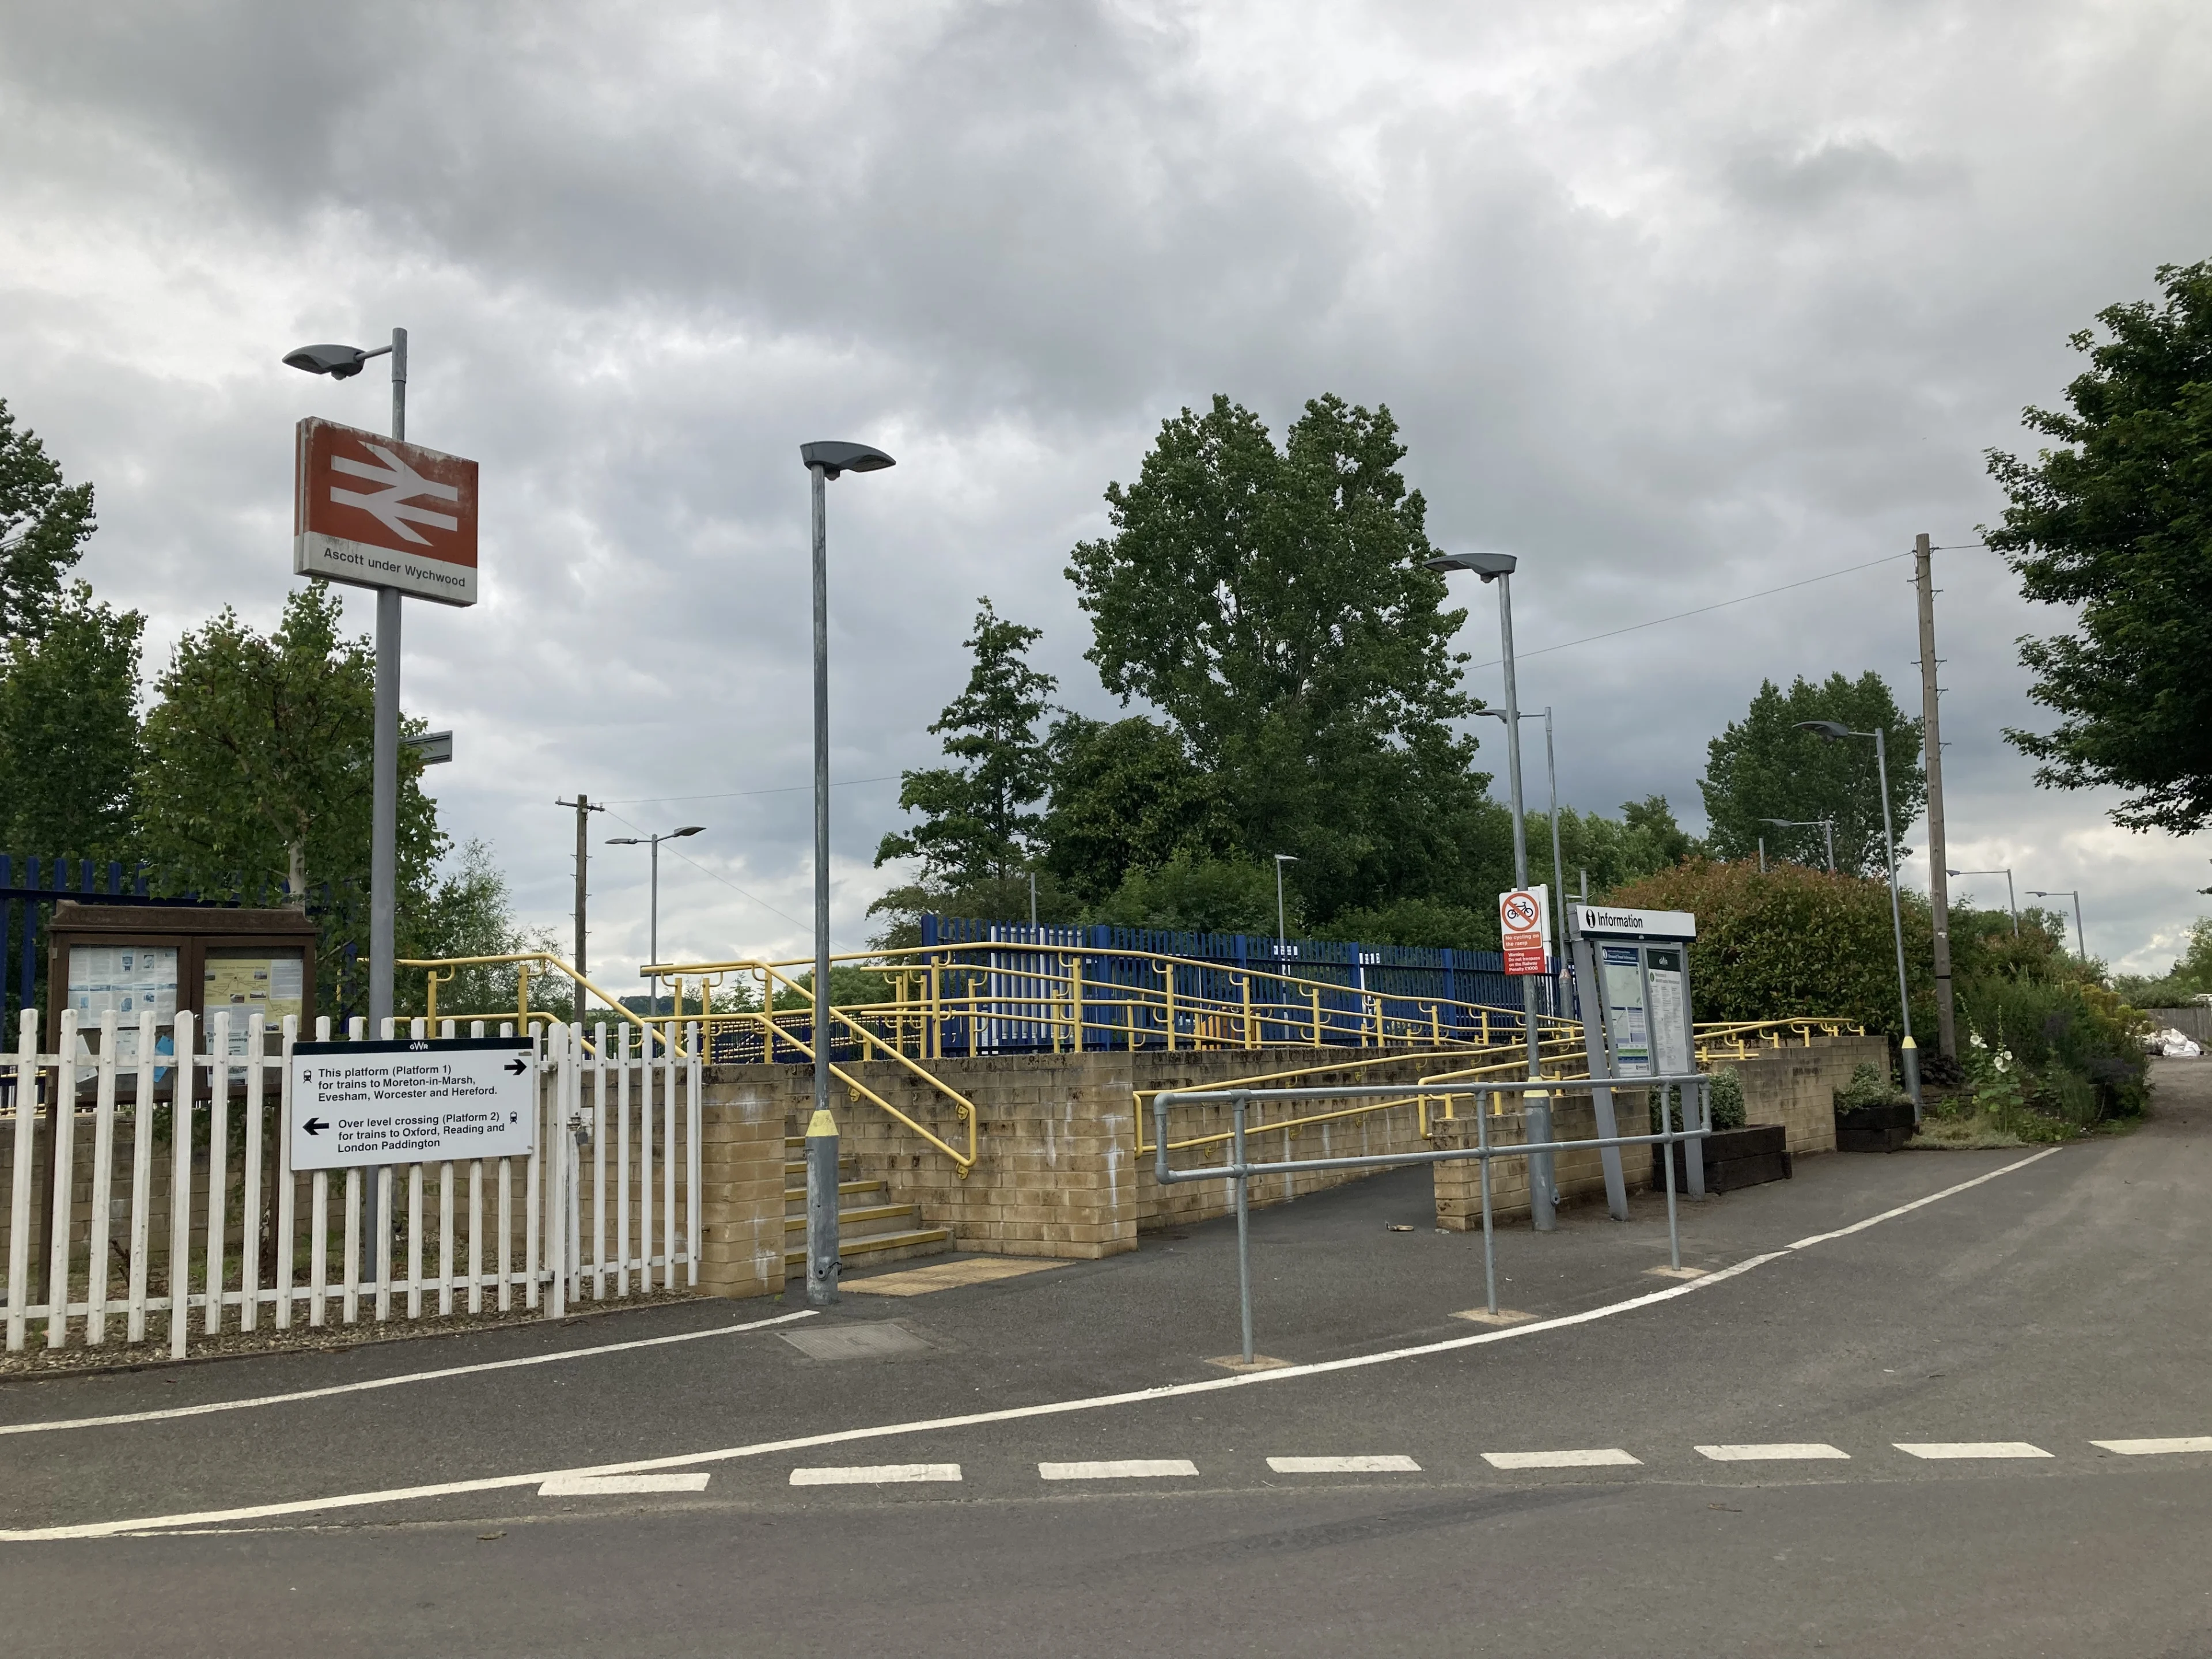 Ascott-under-Wychwood station entrance